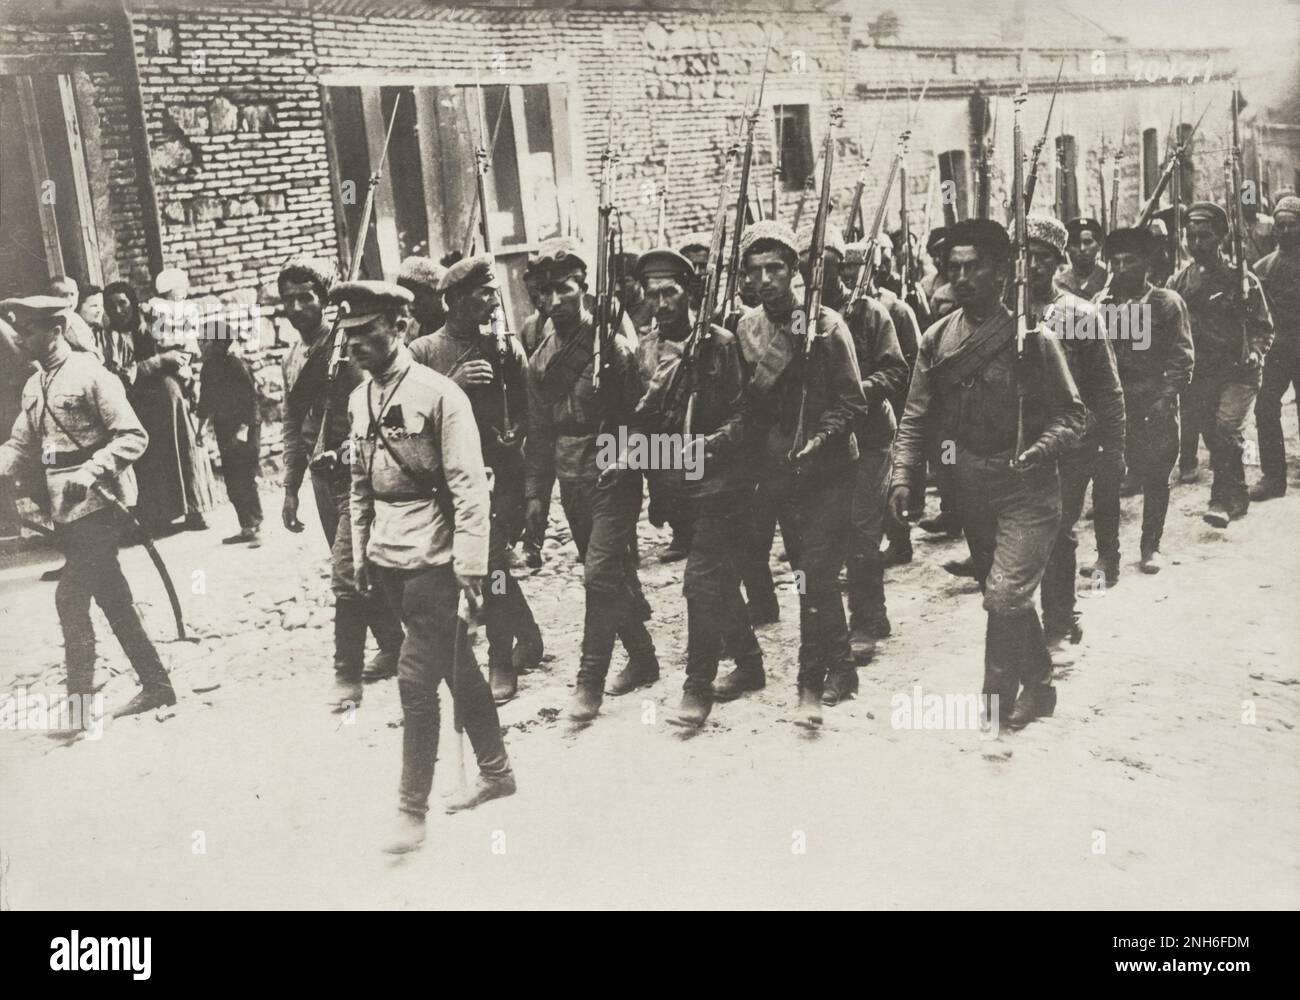 1914-1918. Erster Weltkrieg Das Bild zeigt einen Zug russischer Soldaten, die laut der Inschrift auf dem Bild an einer Beerdigungszeremonie teilnehmen. Stockfoto